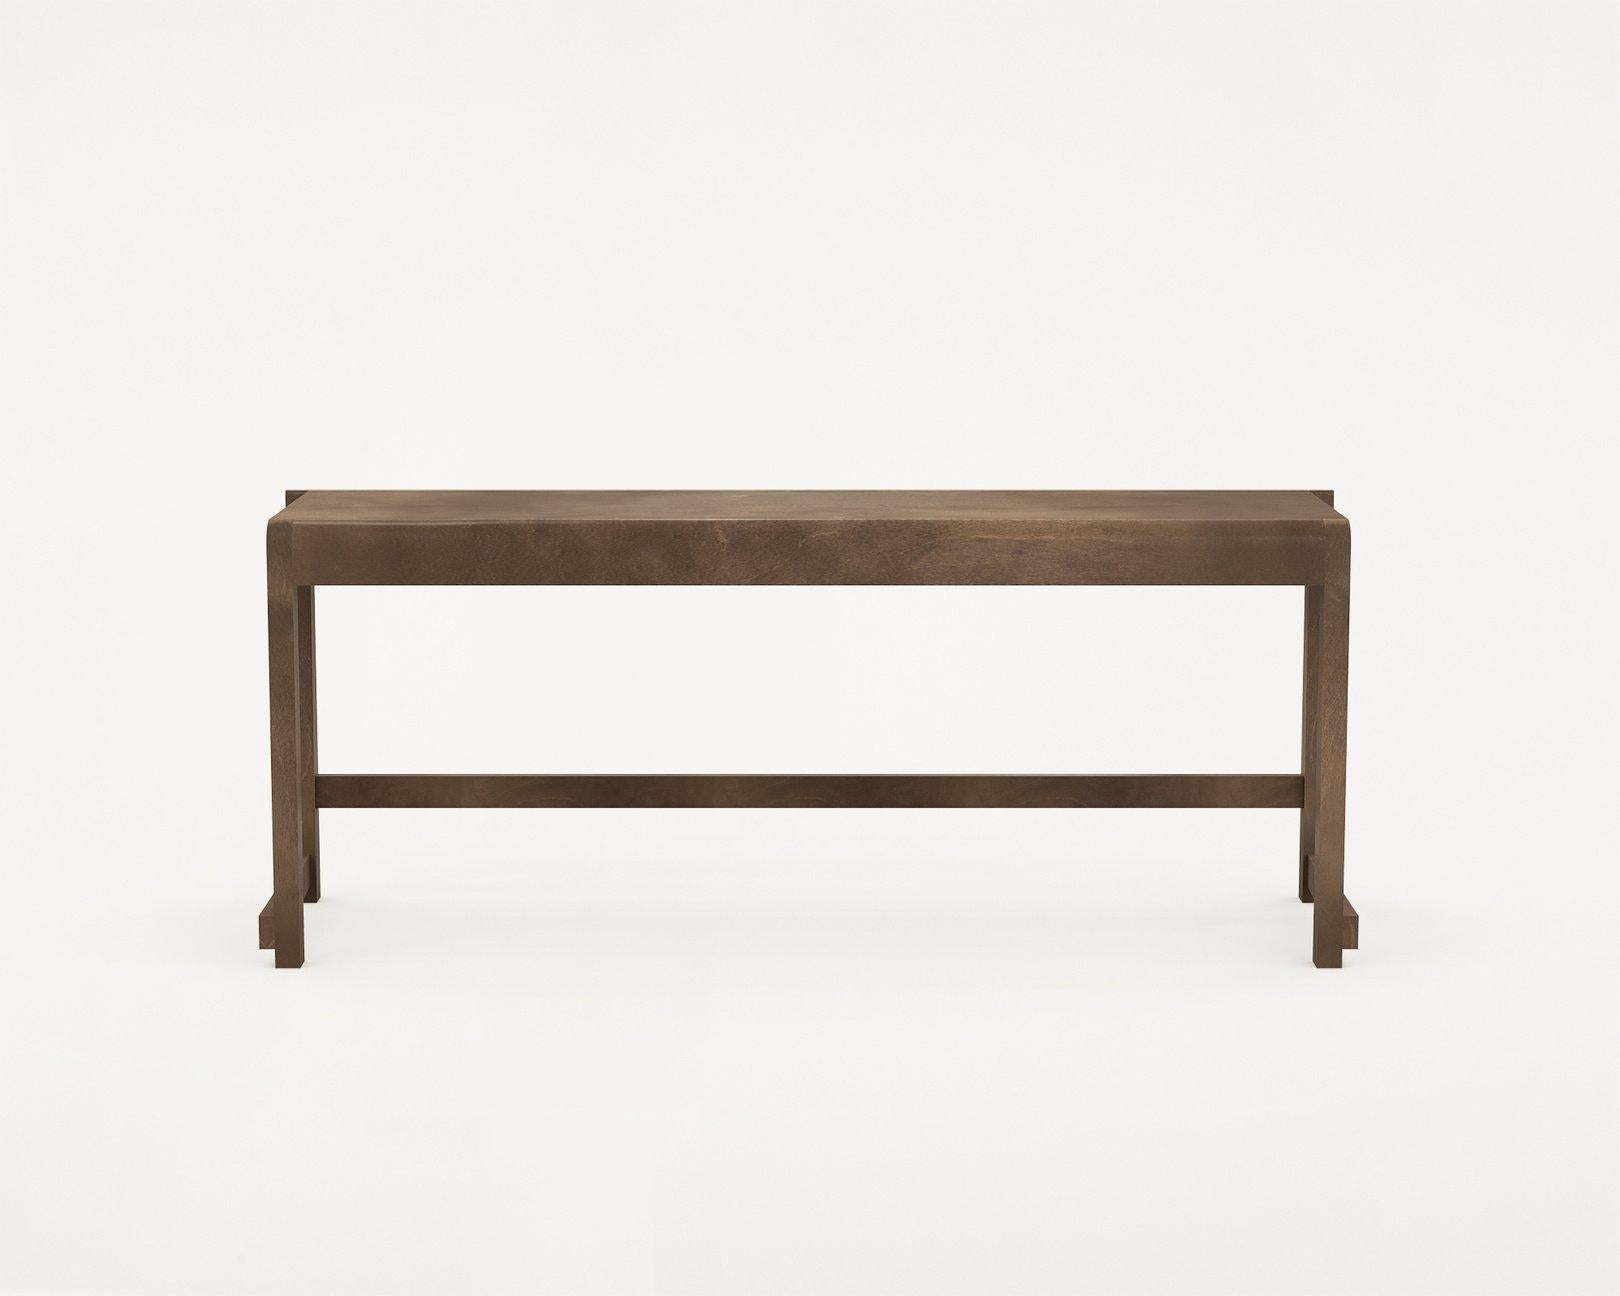 Danish Minimal Scandinavian Design Bench 01 in Dark Wood For Sale